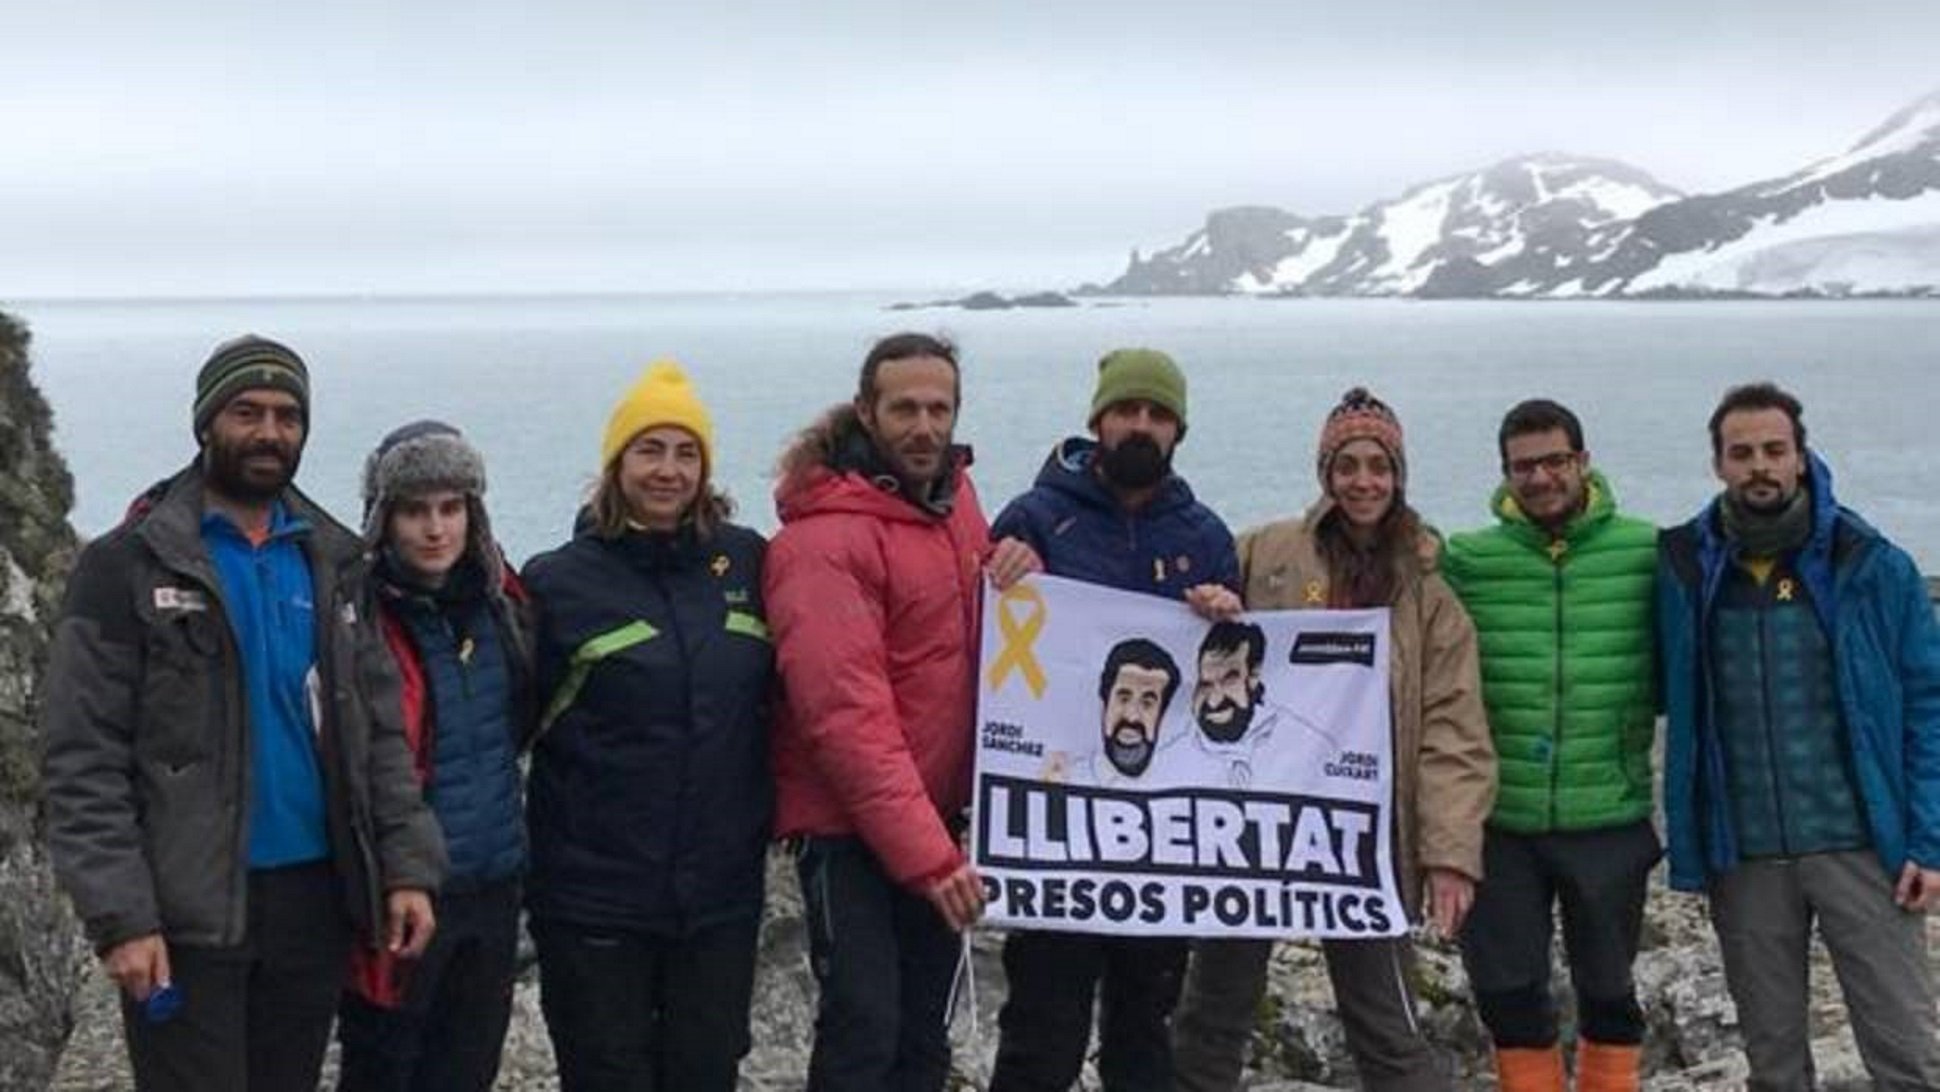 Amenacen de sancions una científica catalana per dur el llaç groc